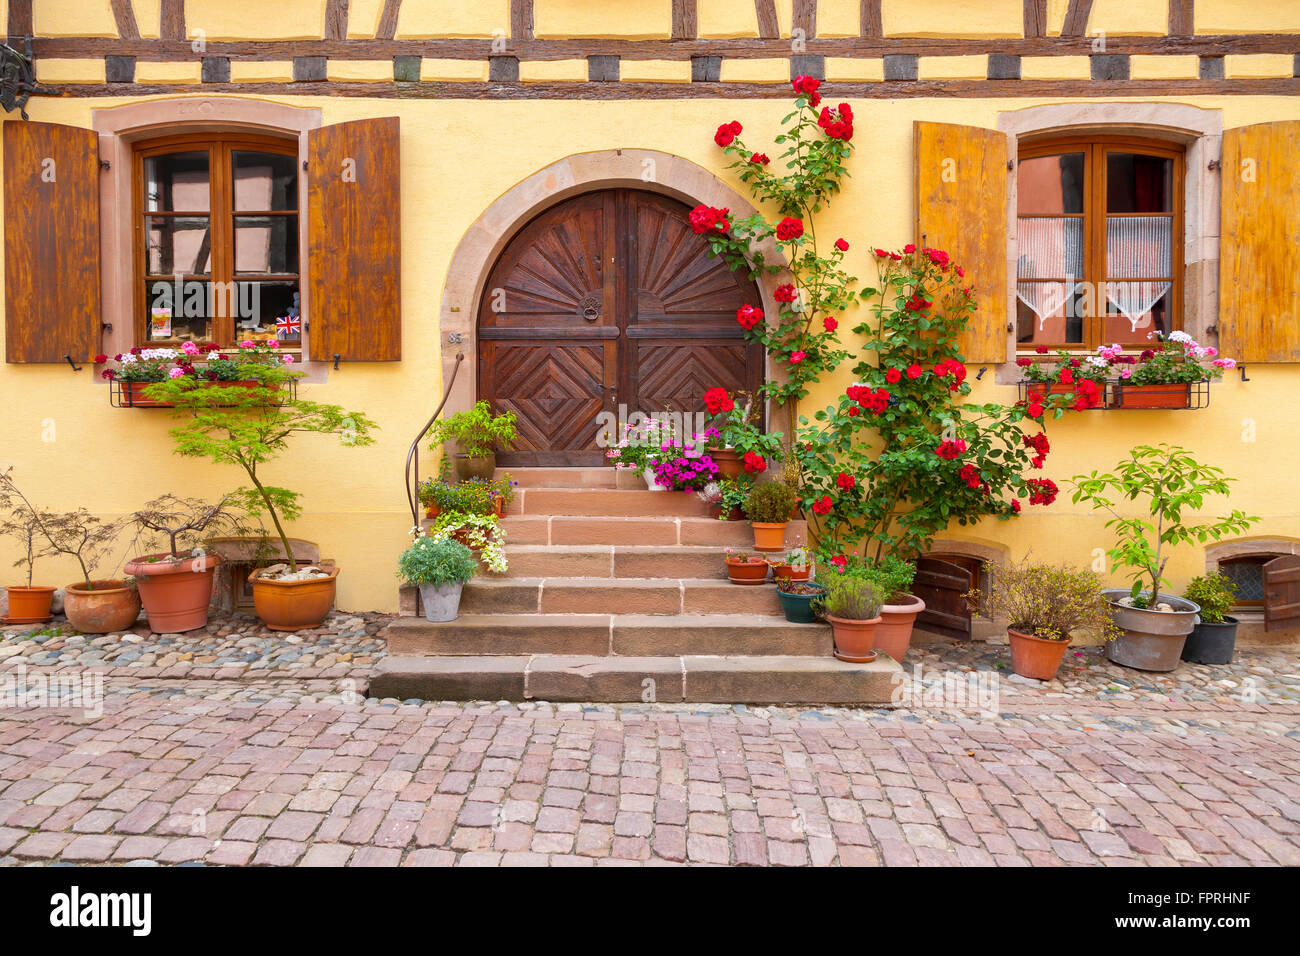 Maison à colombages typique d'Eguisheim le long de la route des vins d'Alsace, France. Banque D'Images